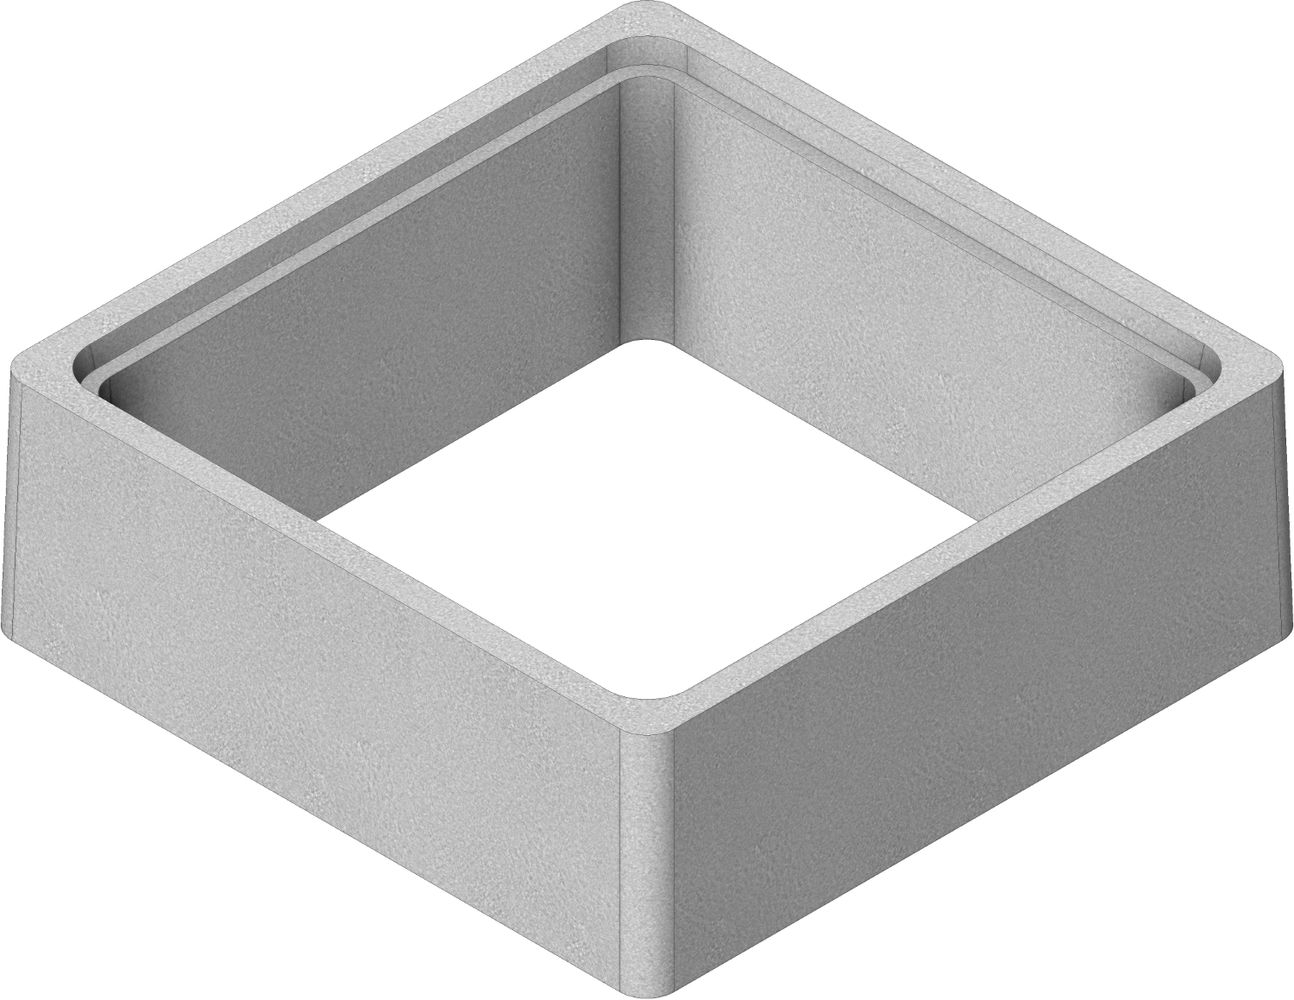 rehausse-beton-boite-branchement-bb70-700x700-h300-thebault-0